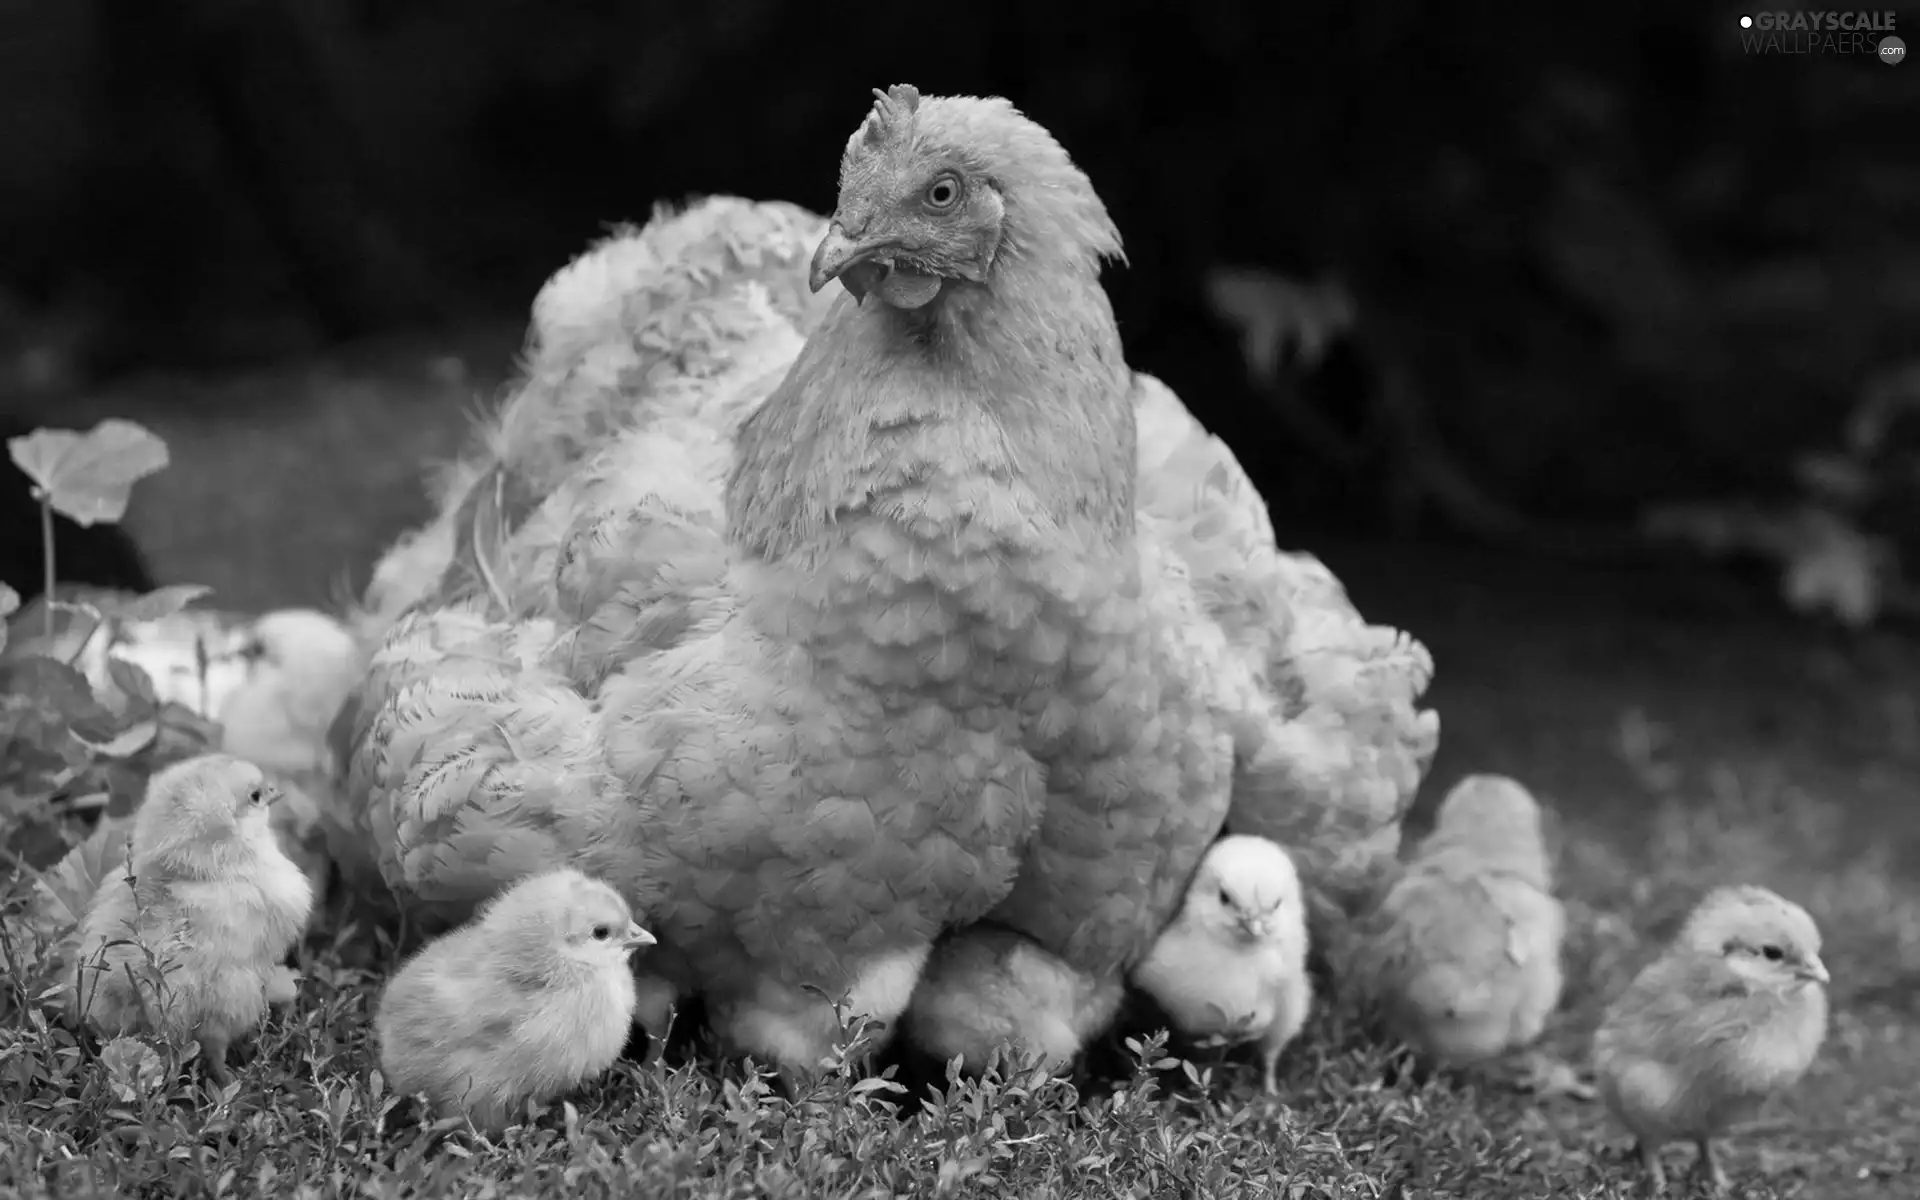 sitter, Chickens